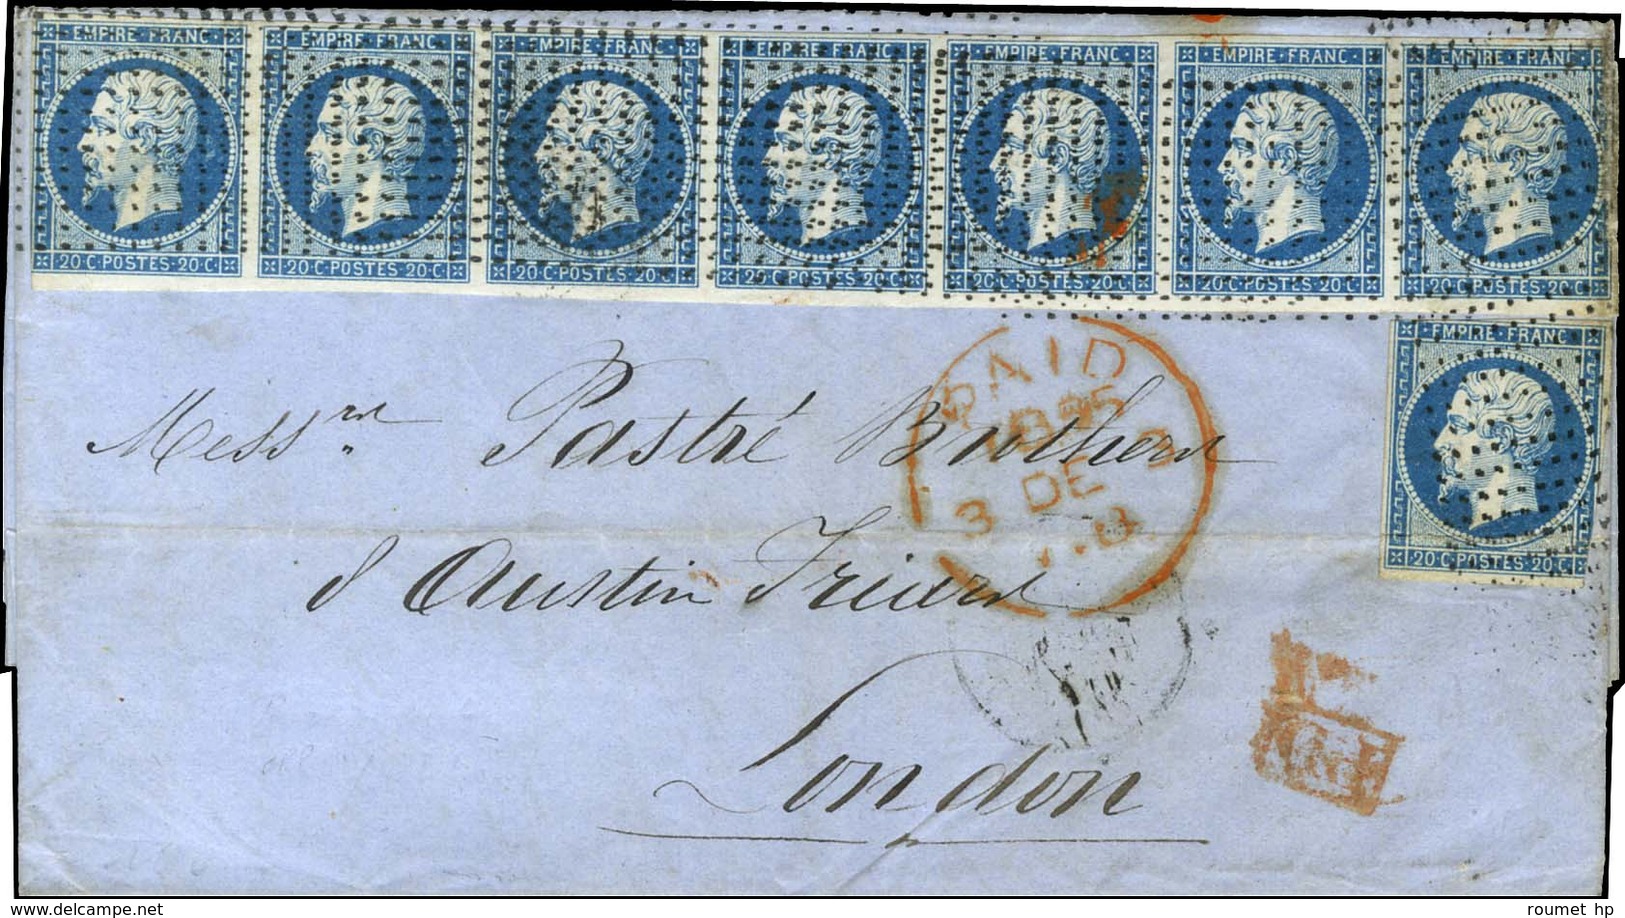 Rouleau De Pointillés / N° 14 Bande De 7 (1 Ex Def) + 1 Ex (def) Sur Lettre 4 Ports Pour Londres. 1855. - TB / SUP. - R. - 1853-1860 Napoléon III